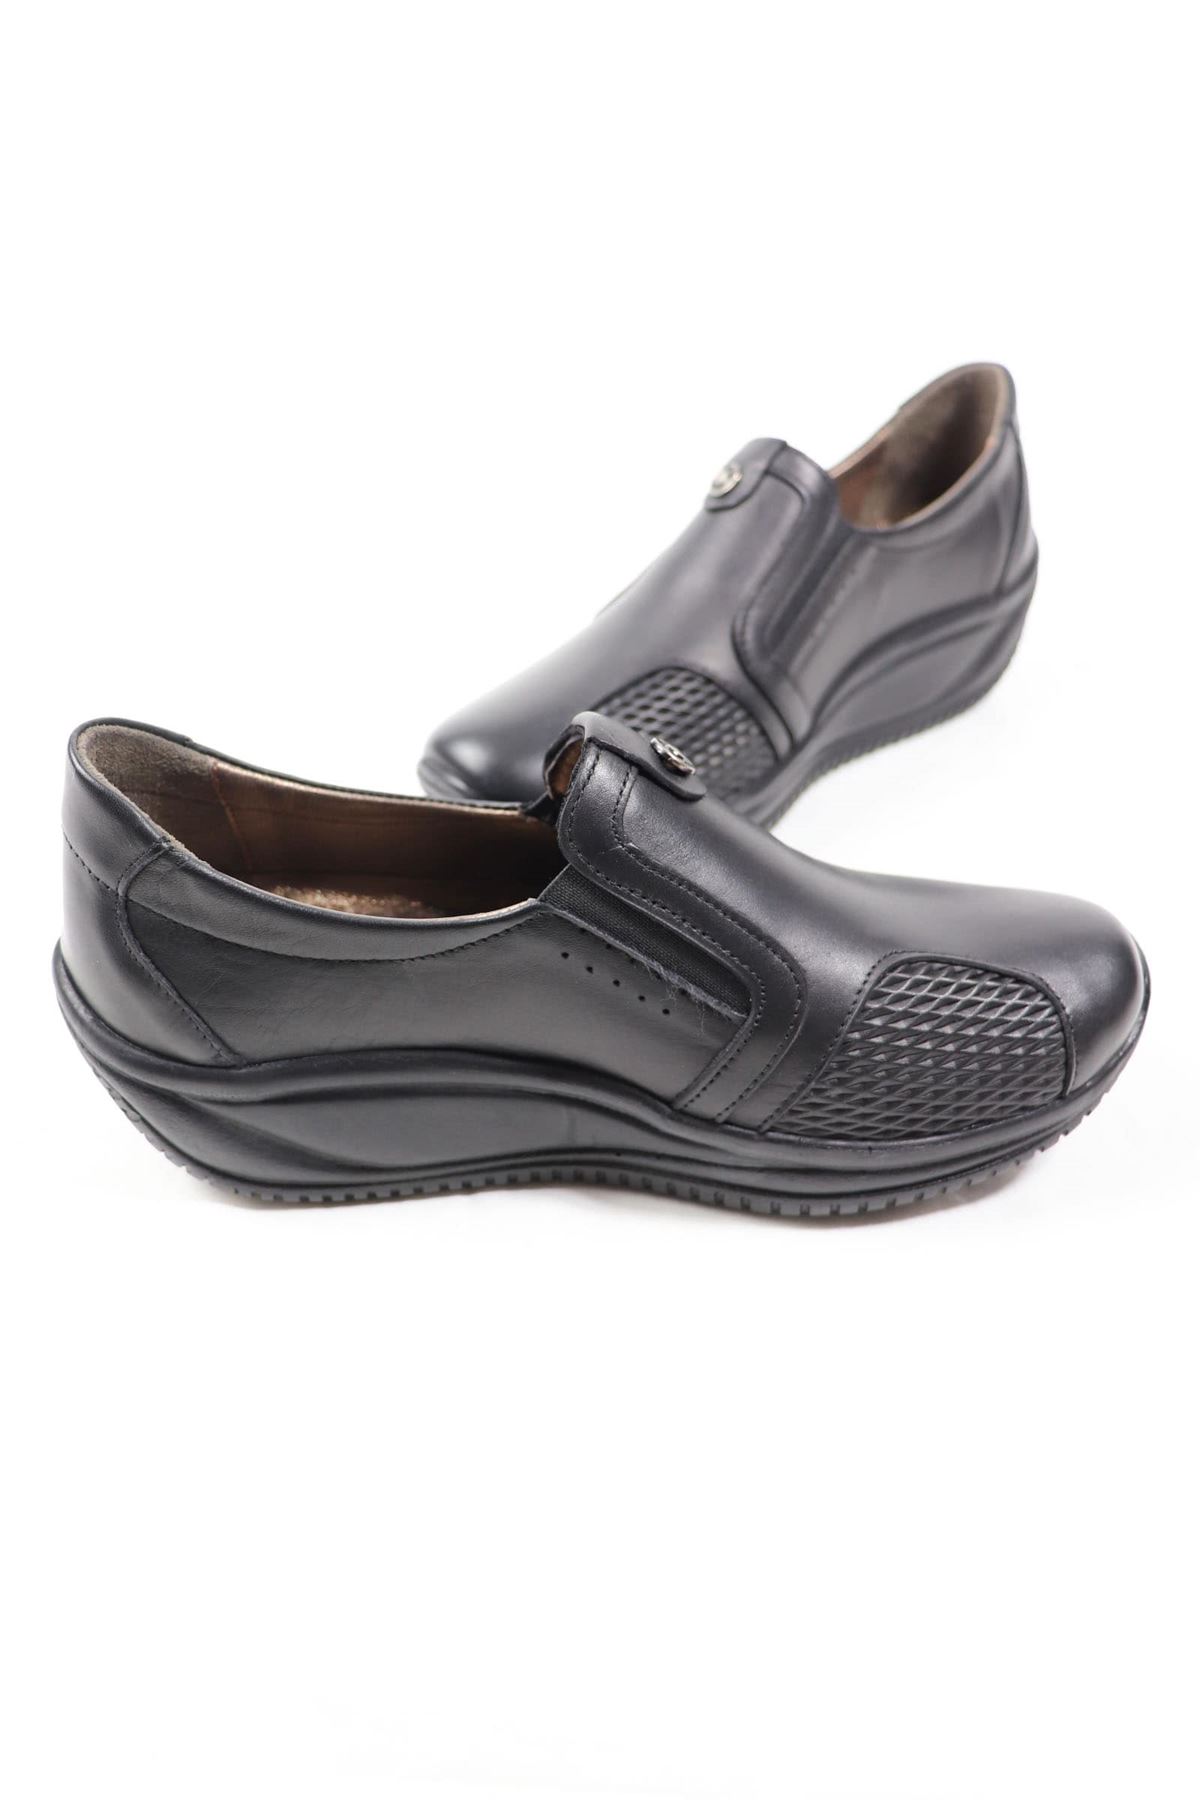 Capella - Siyah Dolgu Topuk Deri Kadın Ayakkabı 